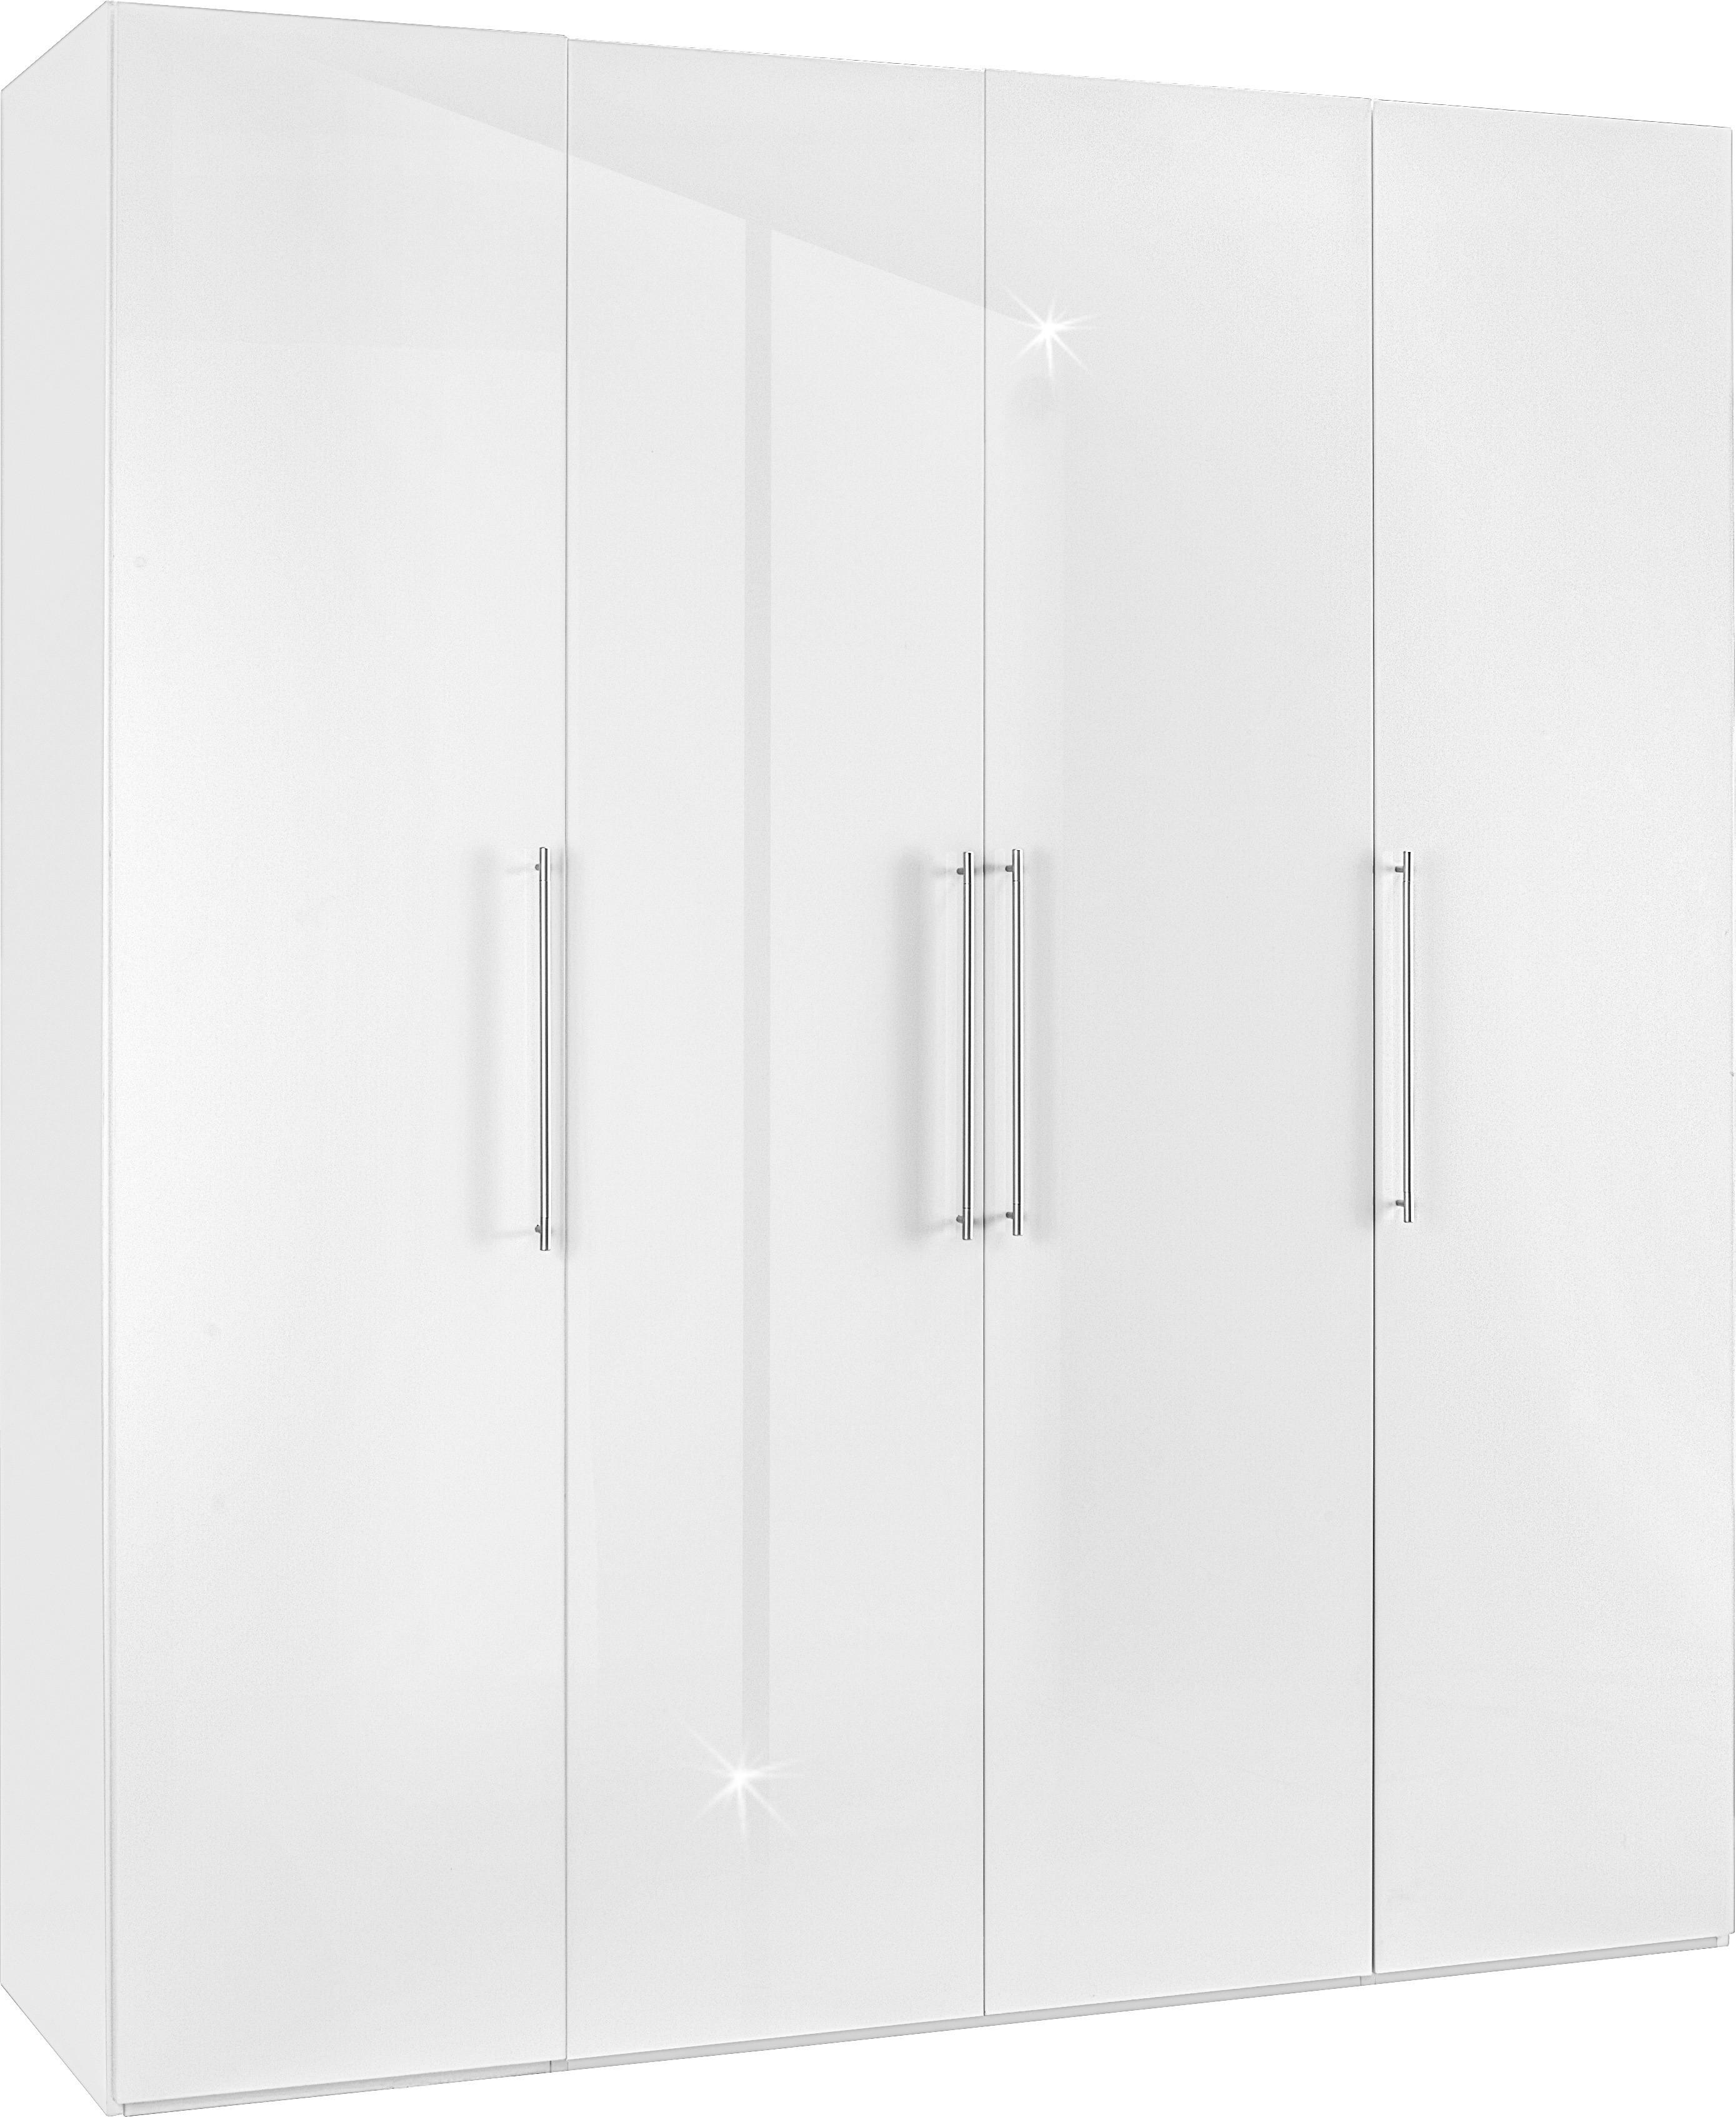 Drehtürenschrank in Weiß - Chromfarben/Weiß, KONVENTIONELL, Holzwerkstoff/Metall (196/219/60cm) - Modern Living